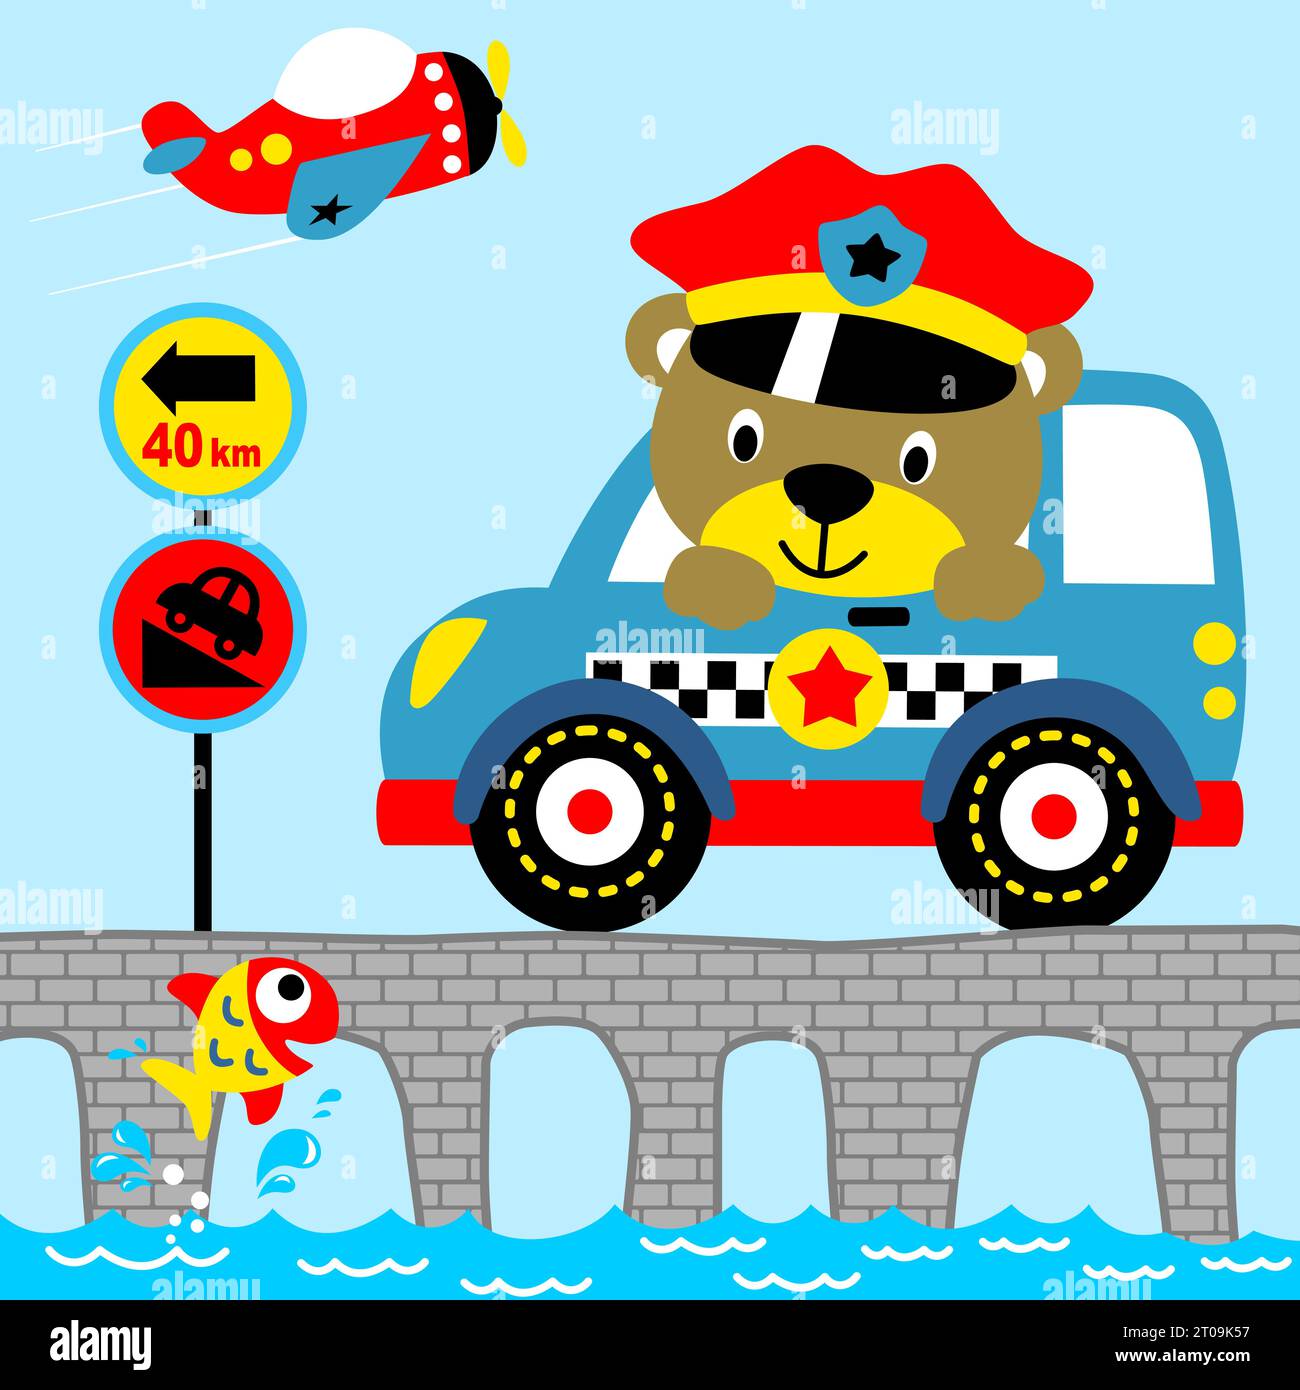 Lustiger Bär Polizeiauto mit Straßenschild auf der Brücke, Flugzeug abheben, kleine Fische springen aus dem Wasser, Vektor-Karikaturillustration Stock Vektor